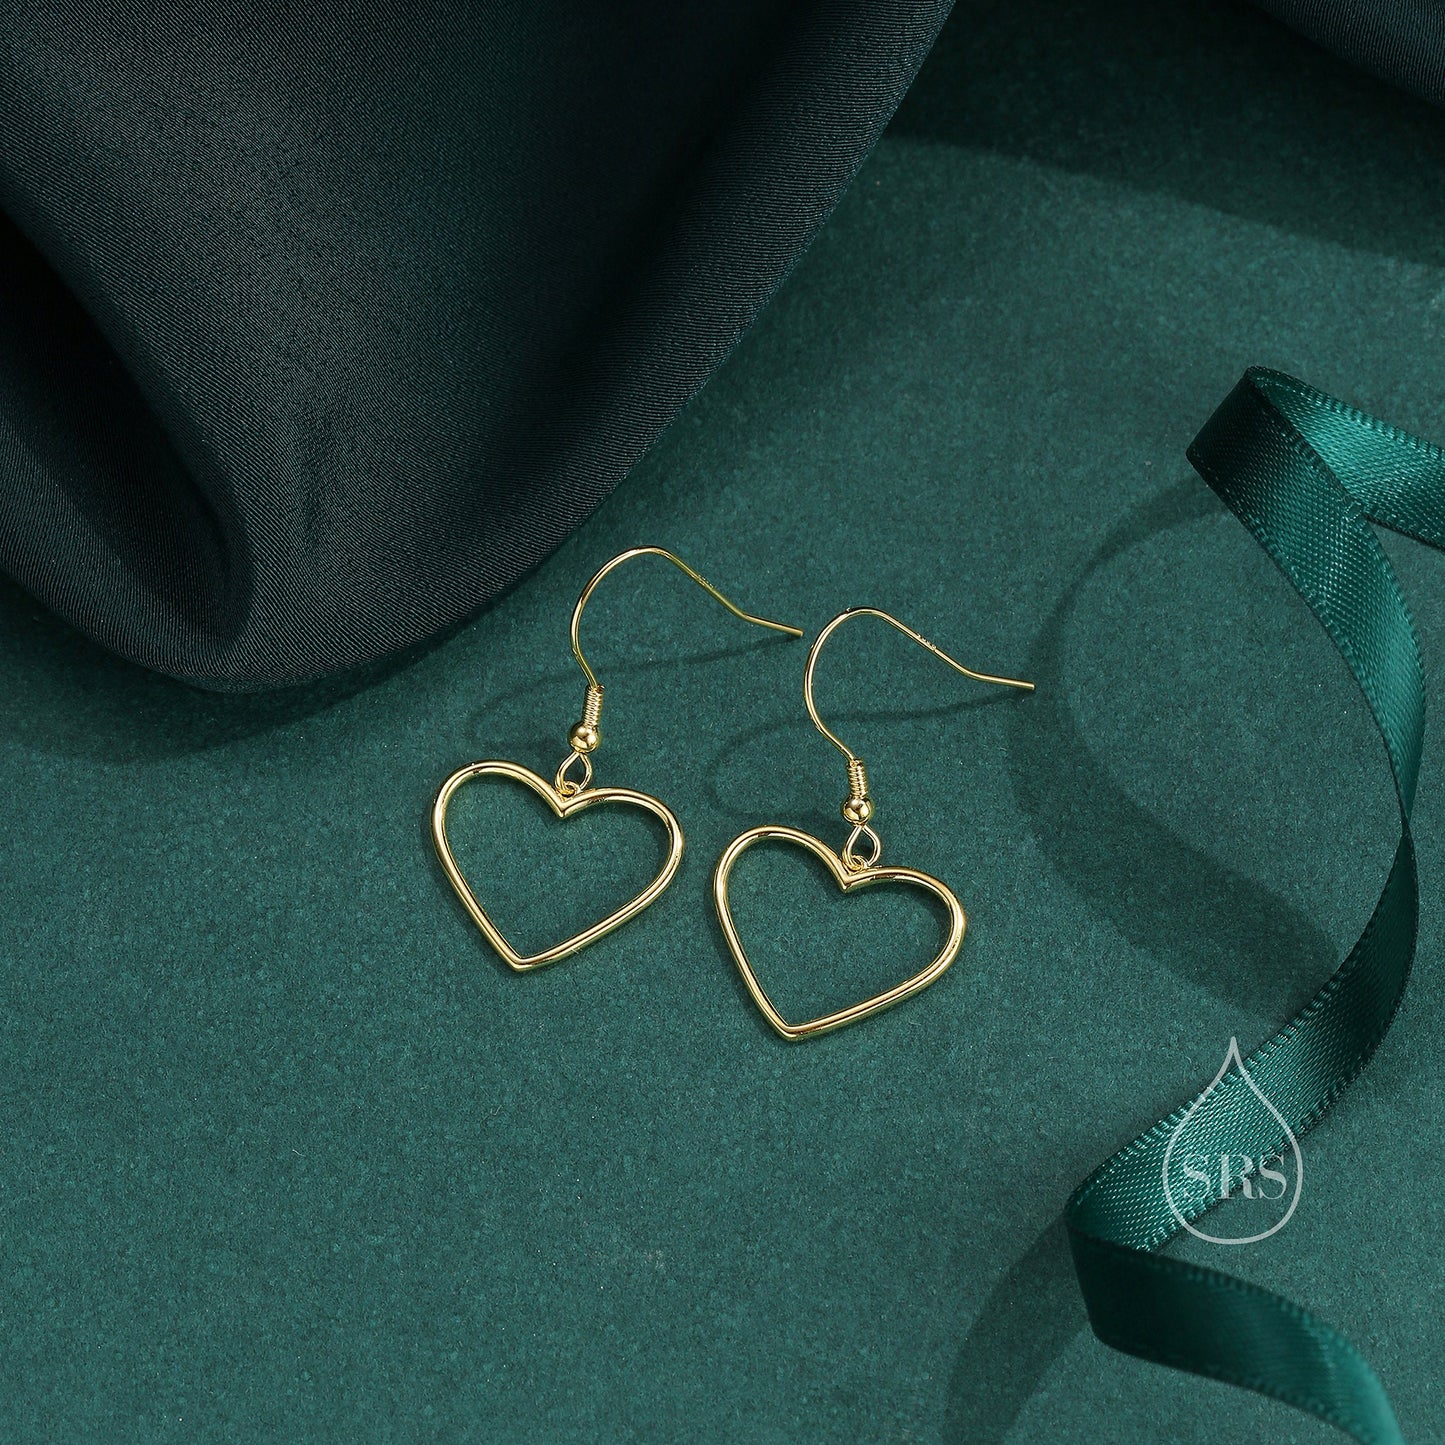 Heart Dangle Drop Hook Earrings in Sterling Silver, Silver or Gold or Rose Gold, Skinny Heart Earrings, Cut Out Heart Earrings, Hollow Heart